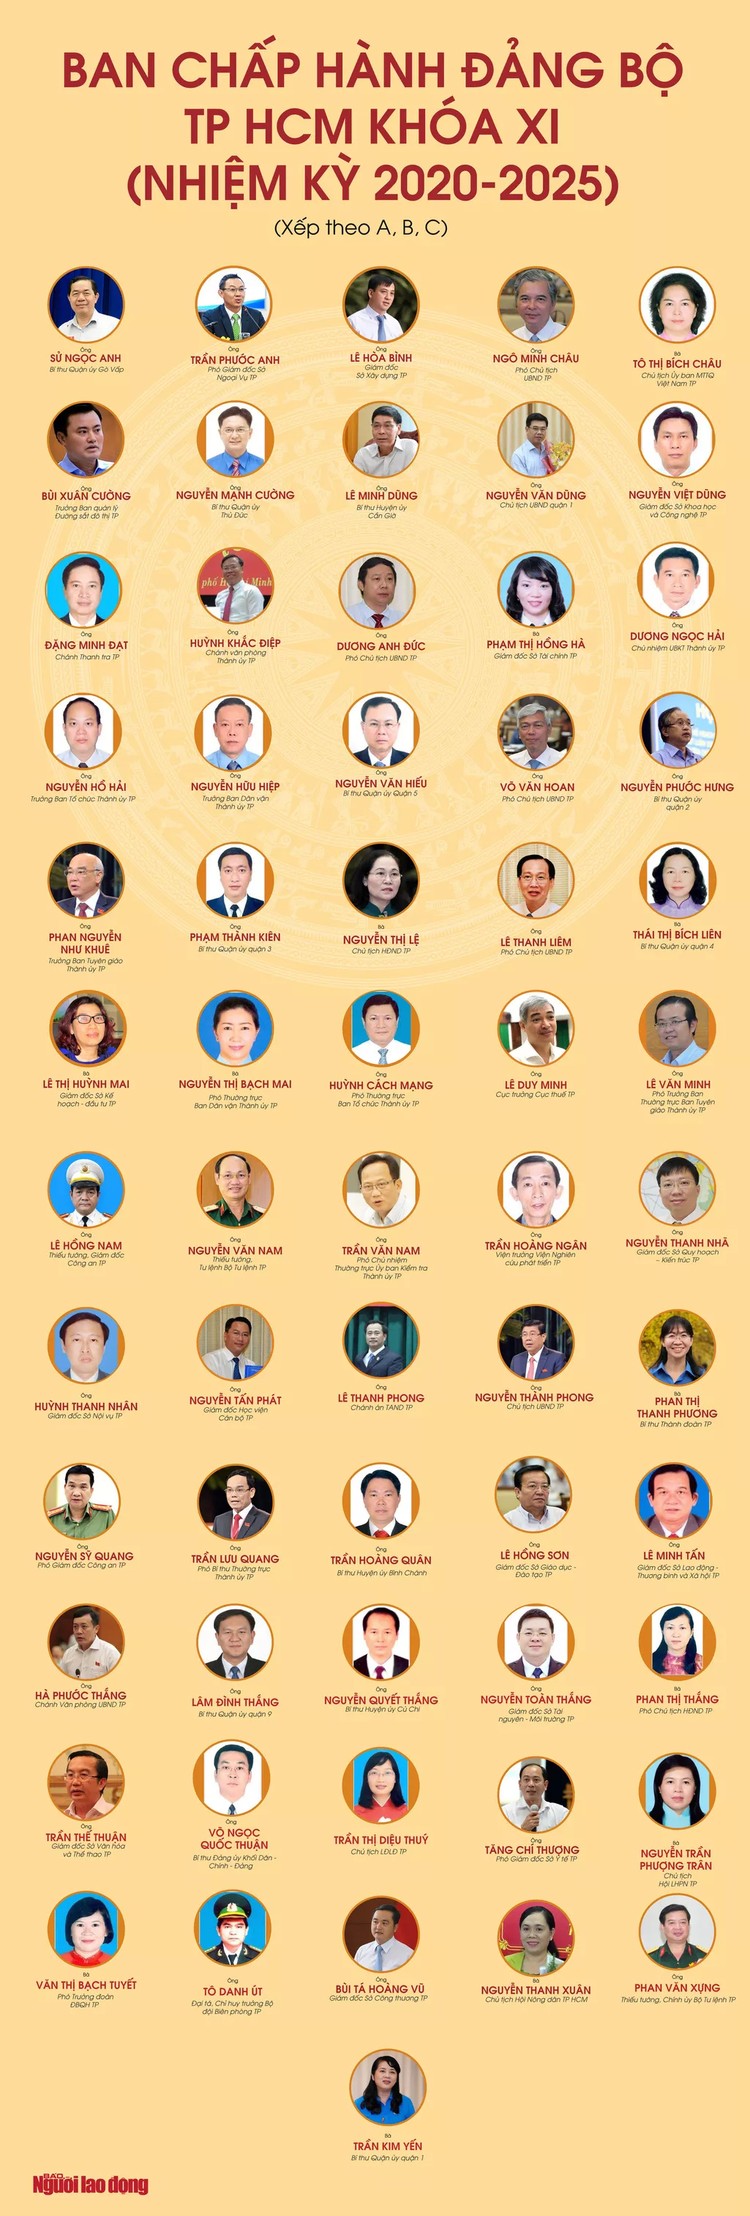 Chân dung 61 ủy viên Ban Chấp hành Đảng bộ TP HCM nhiệm kỳ 2020-2025 ảnh 1